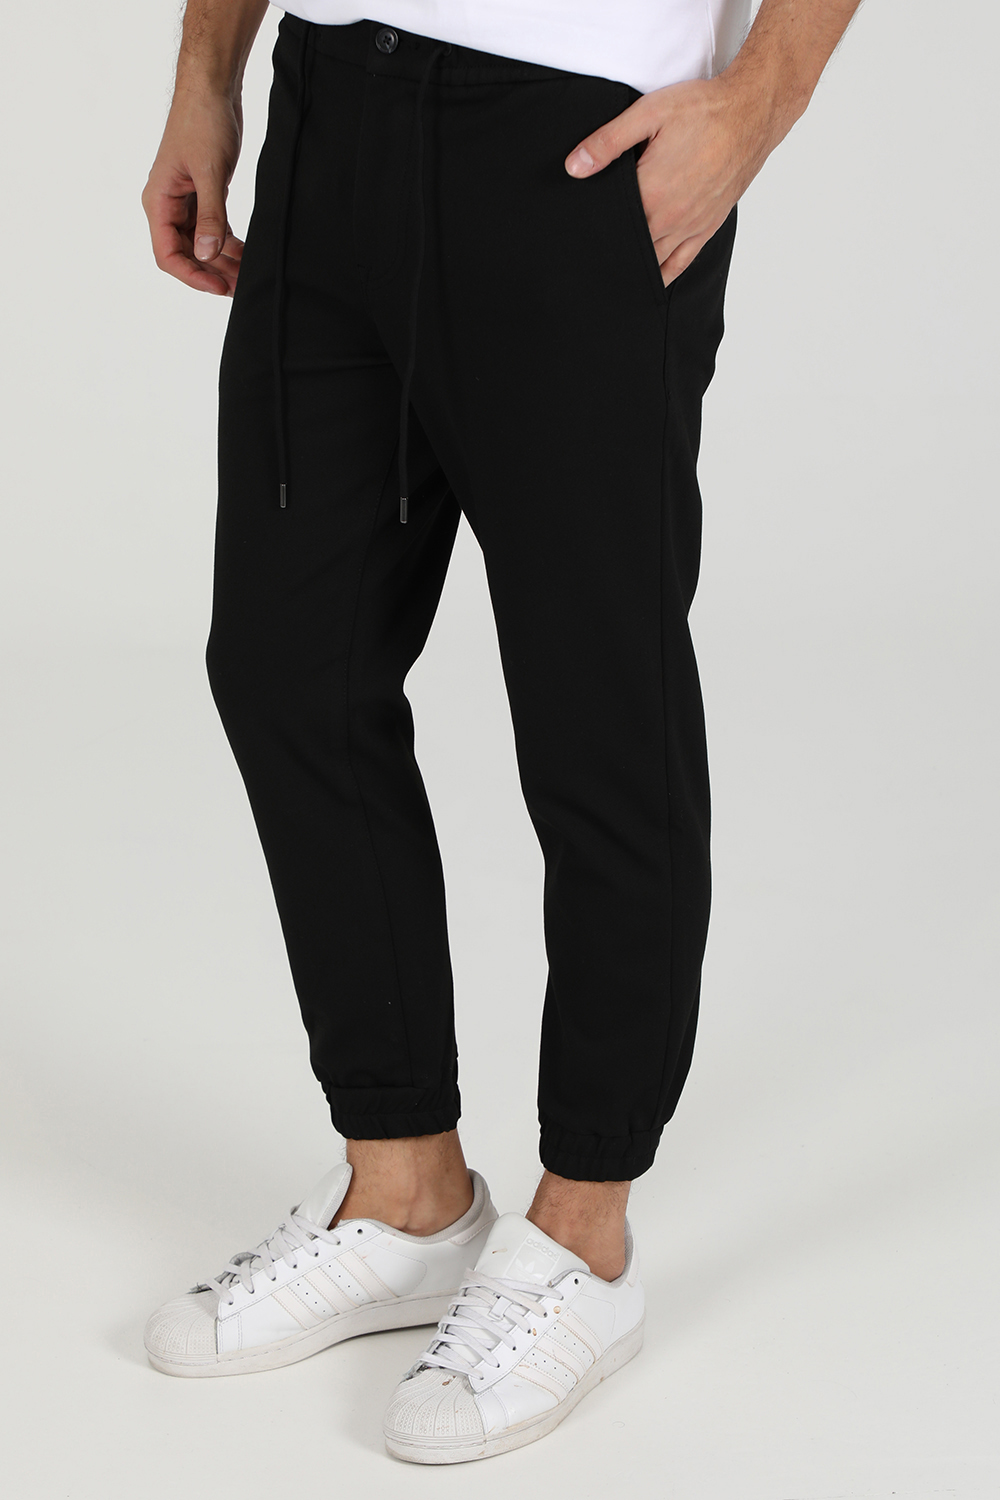 Ανδρικά/Ρούχα/Παντελόνια/Casual BOSS - Ανδρικό παντελόνι Boss Taber-DS C μαύρο